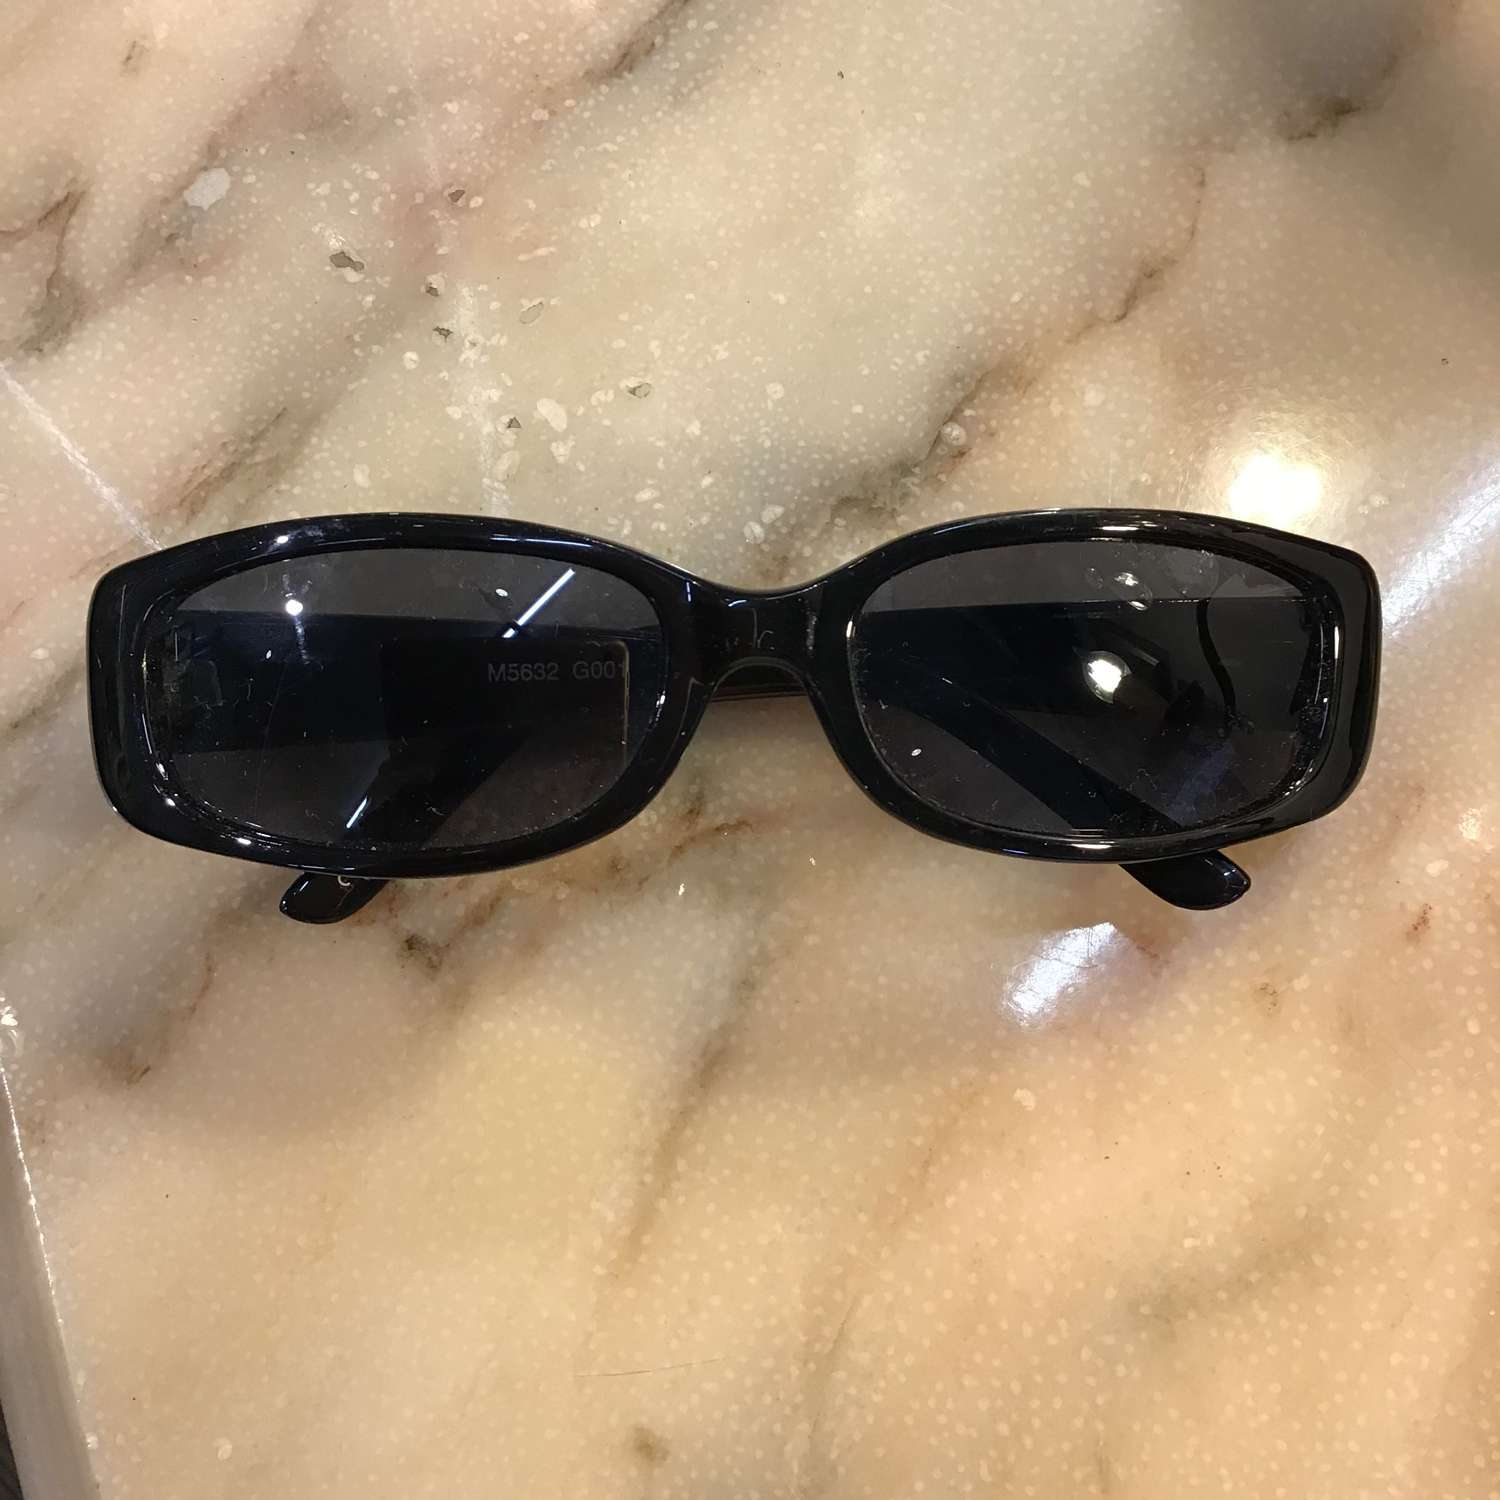 Black Morgan sunglasses